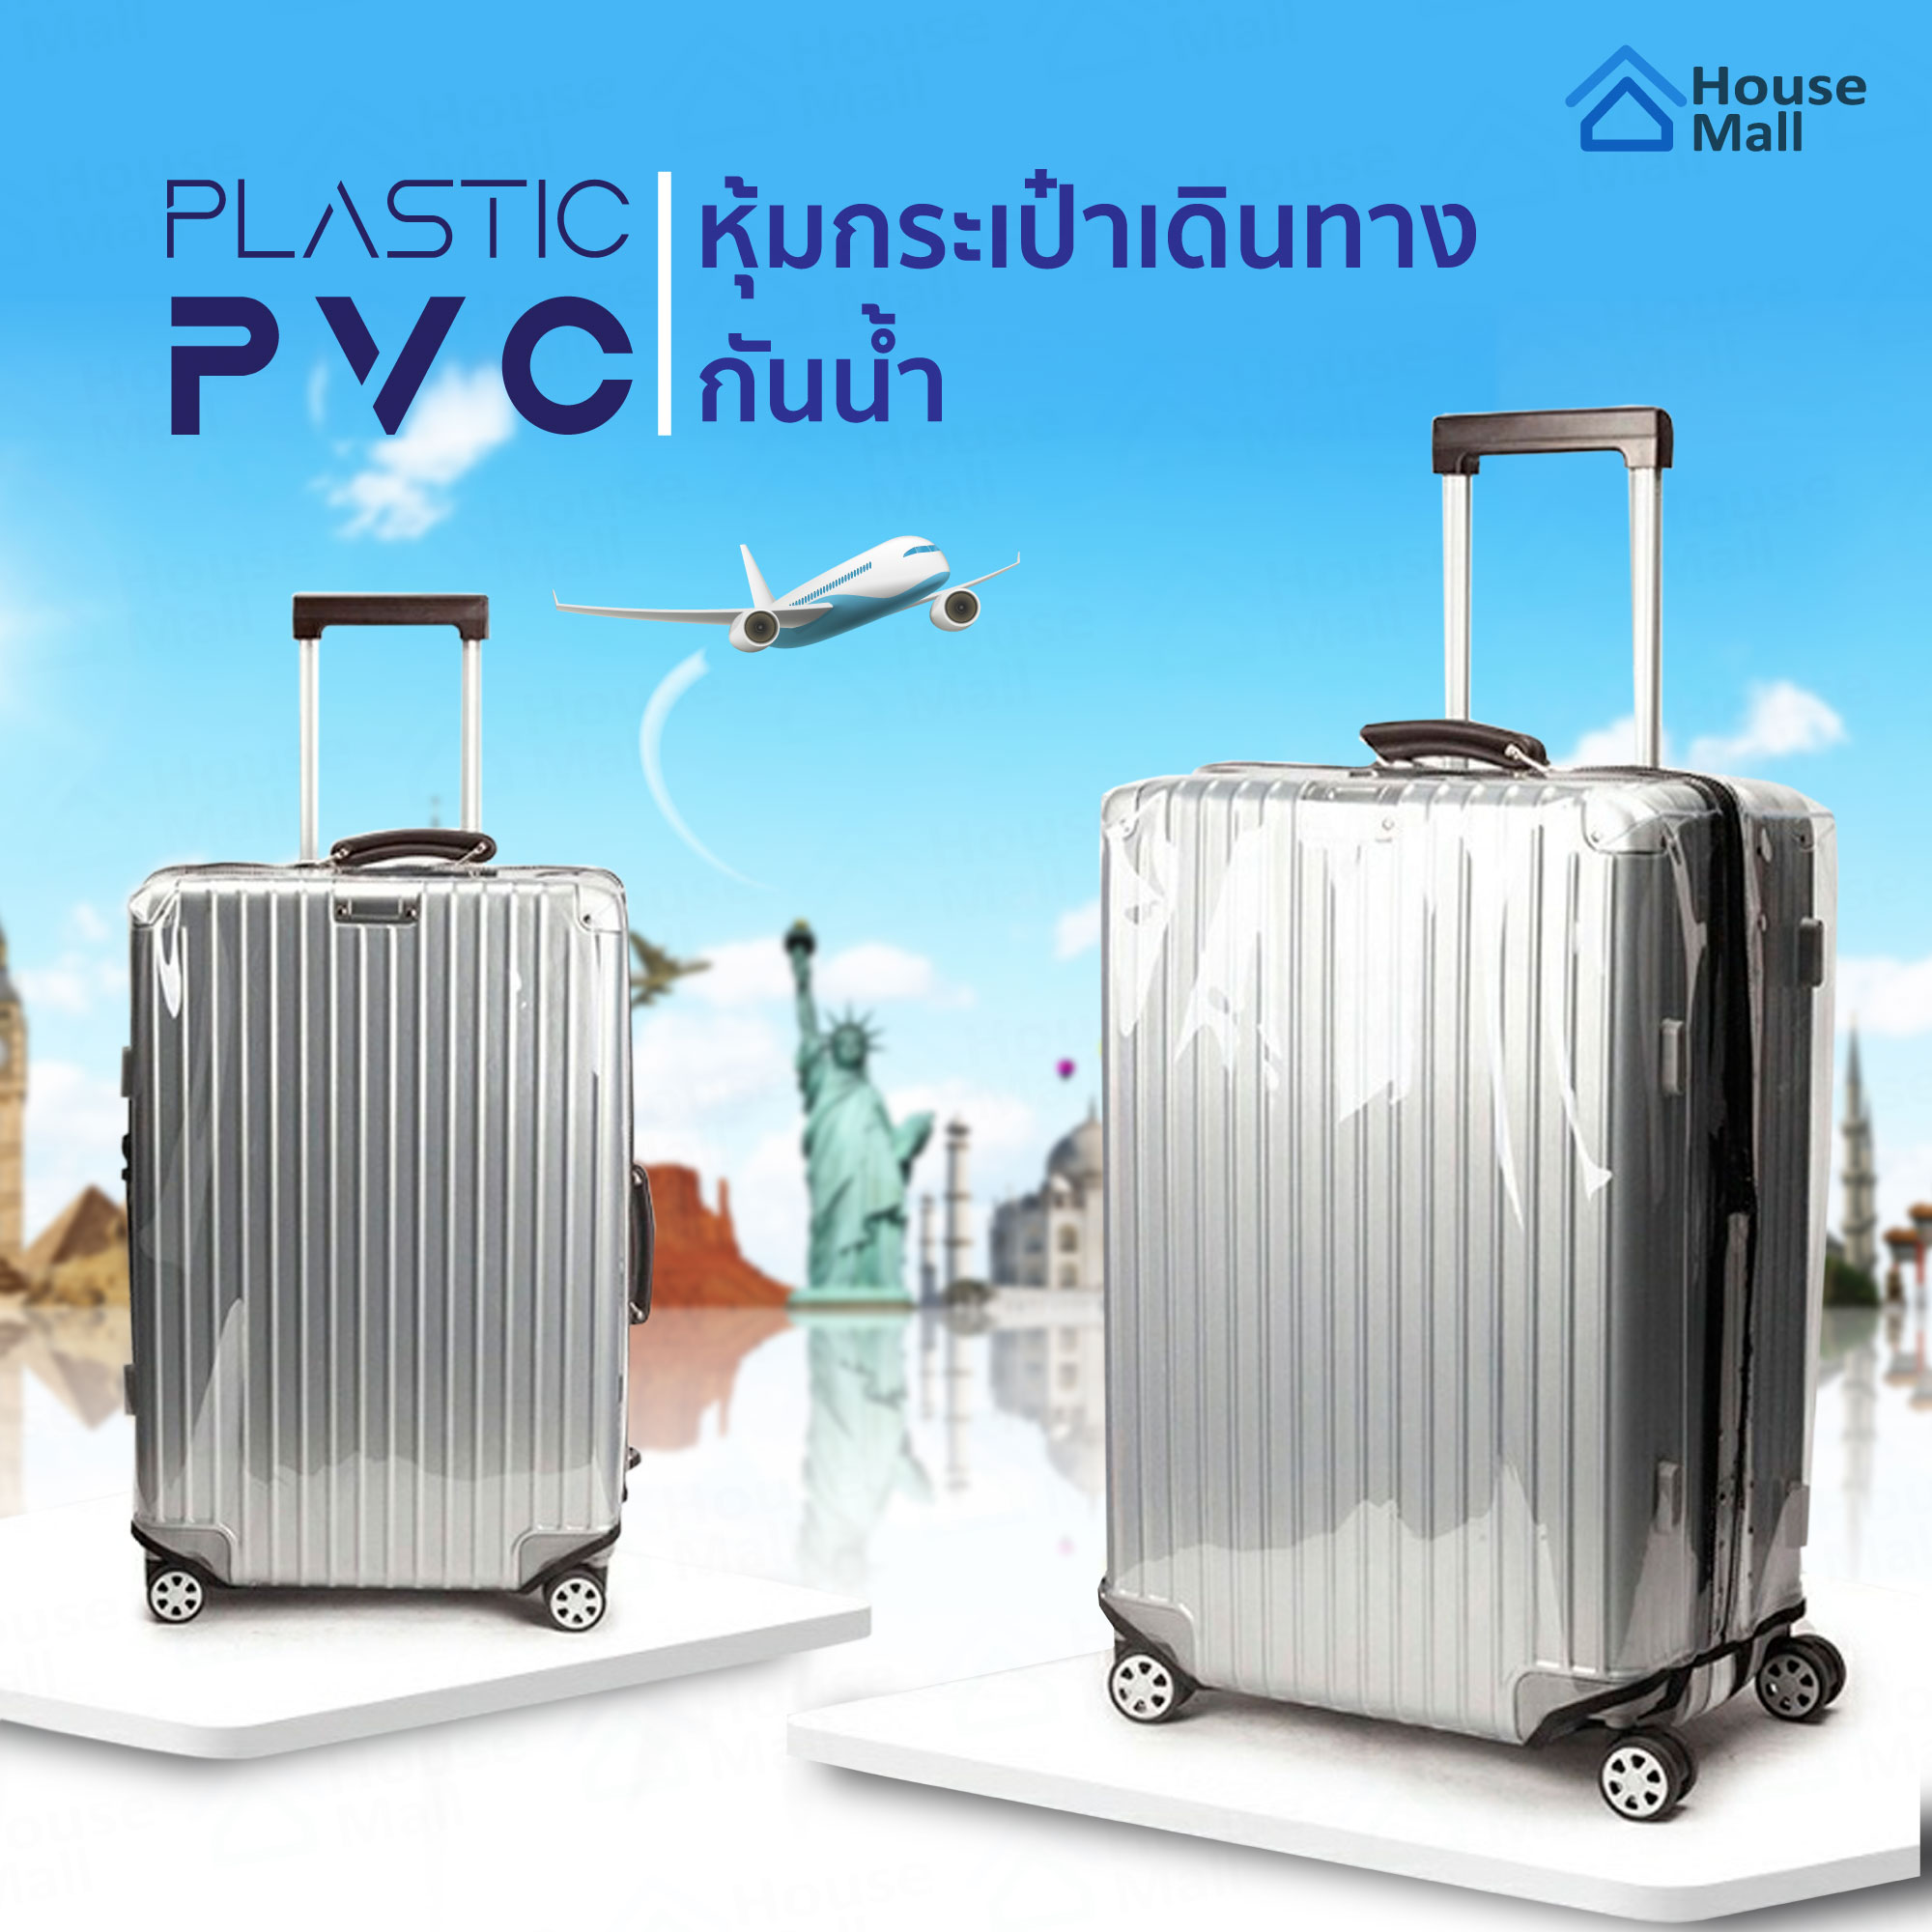 PVC คลุมกระเป๋าเดินทาง ถุงคลุมกระเป๋าเดินทาง พลาสติกใส ผ้าคลุม กันน้ำ กันฝุ่น กันรอย Luggage Cover waterproof